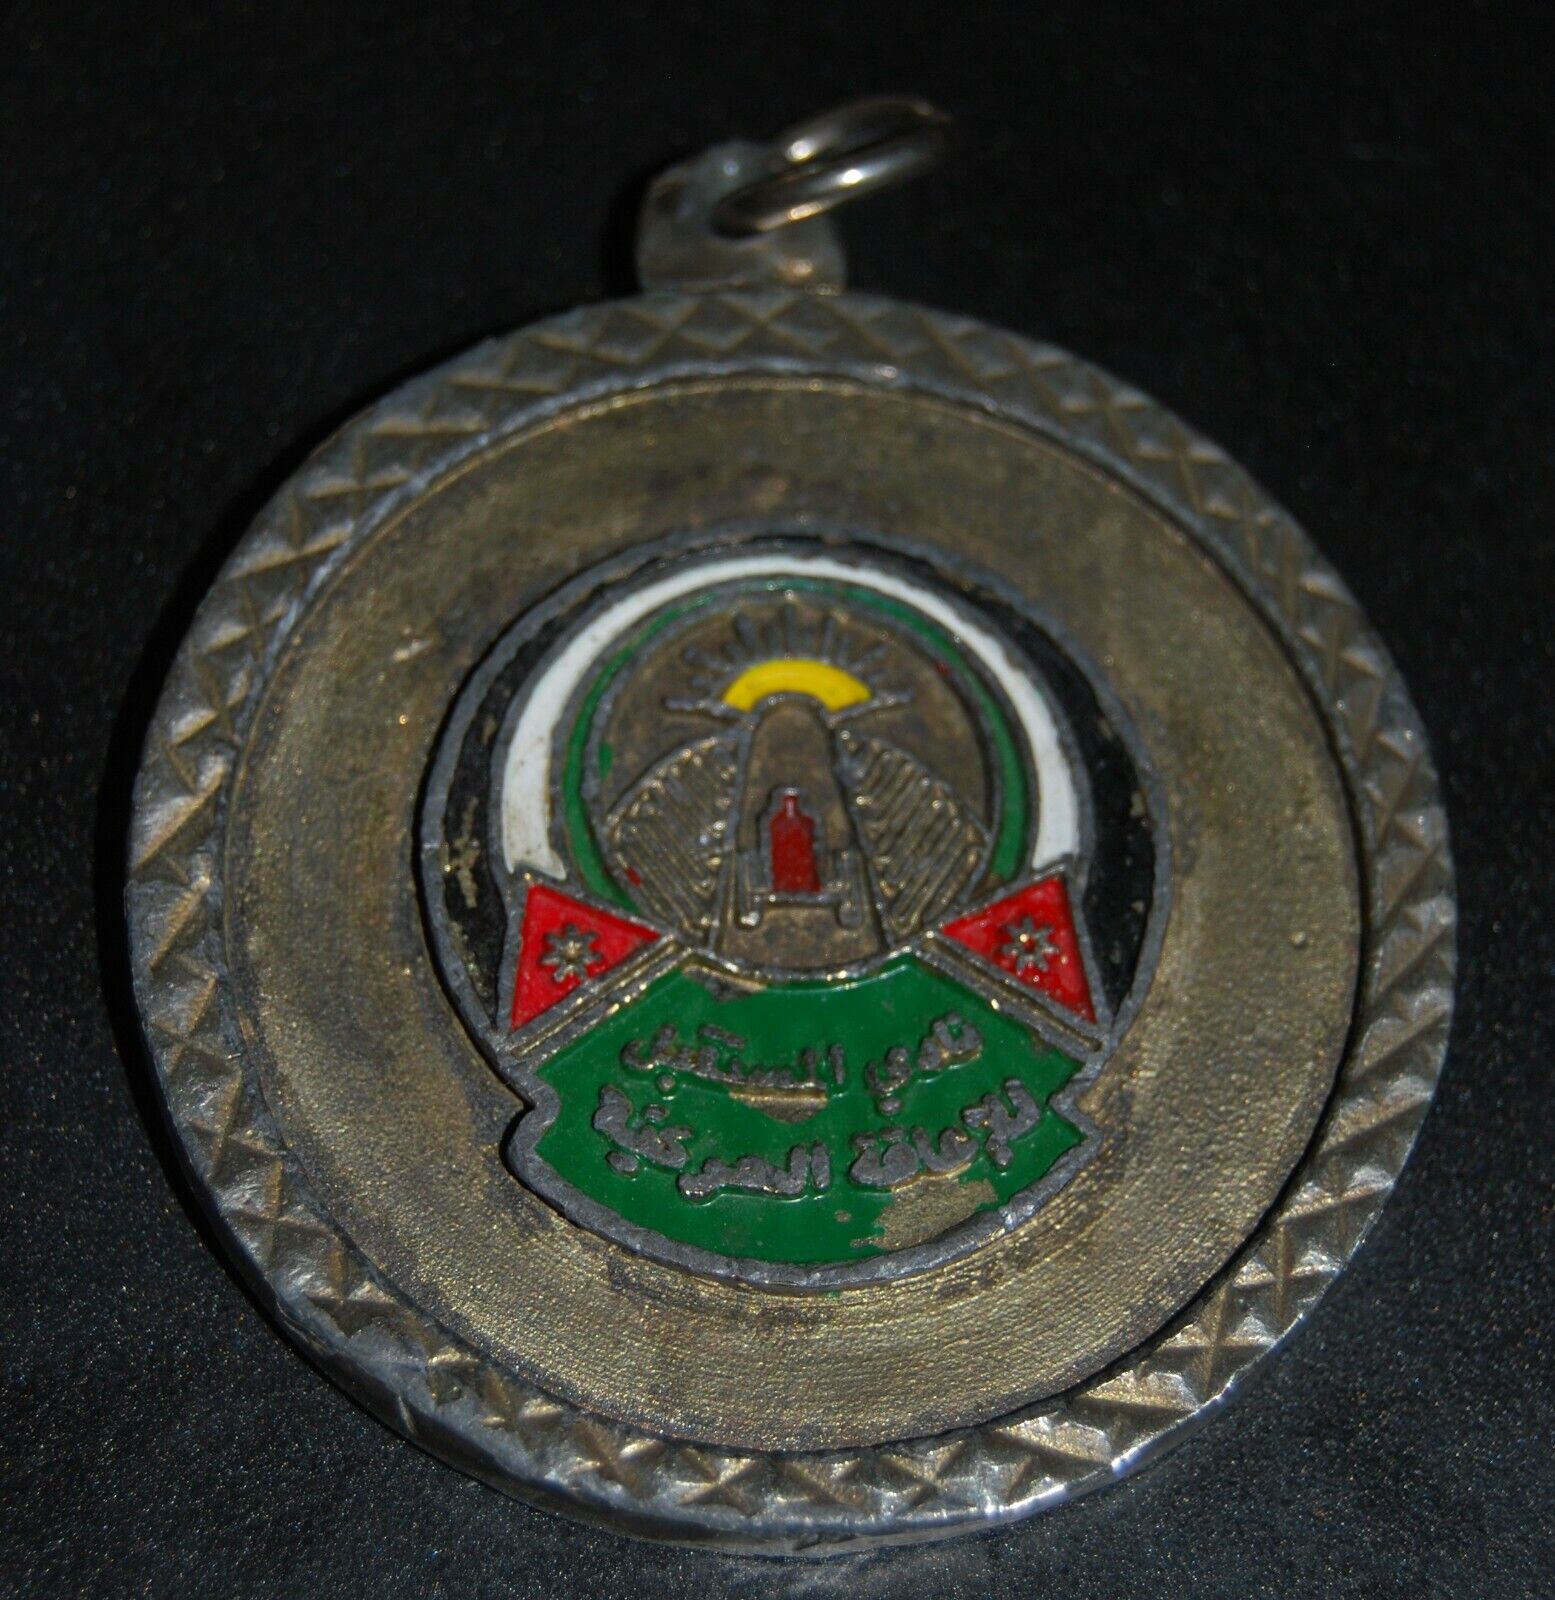 commemorative medallion of the Future Club of Handicap in Jordan, 1970-1980s.